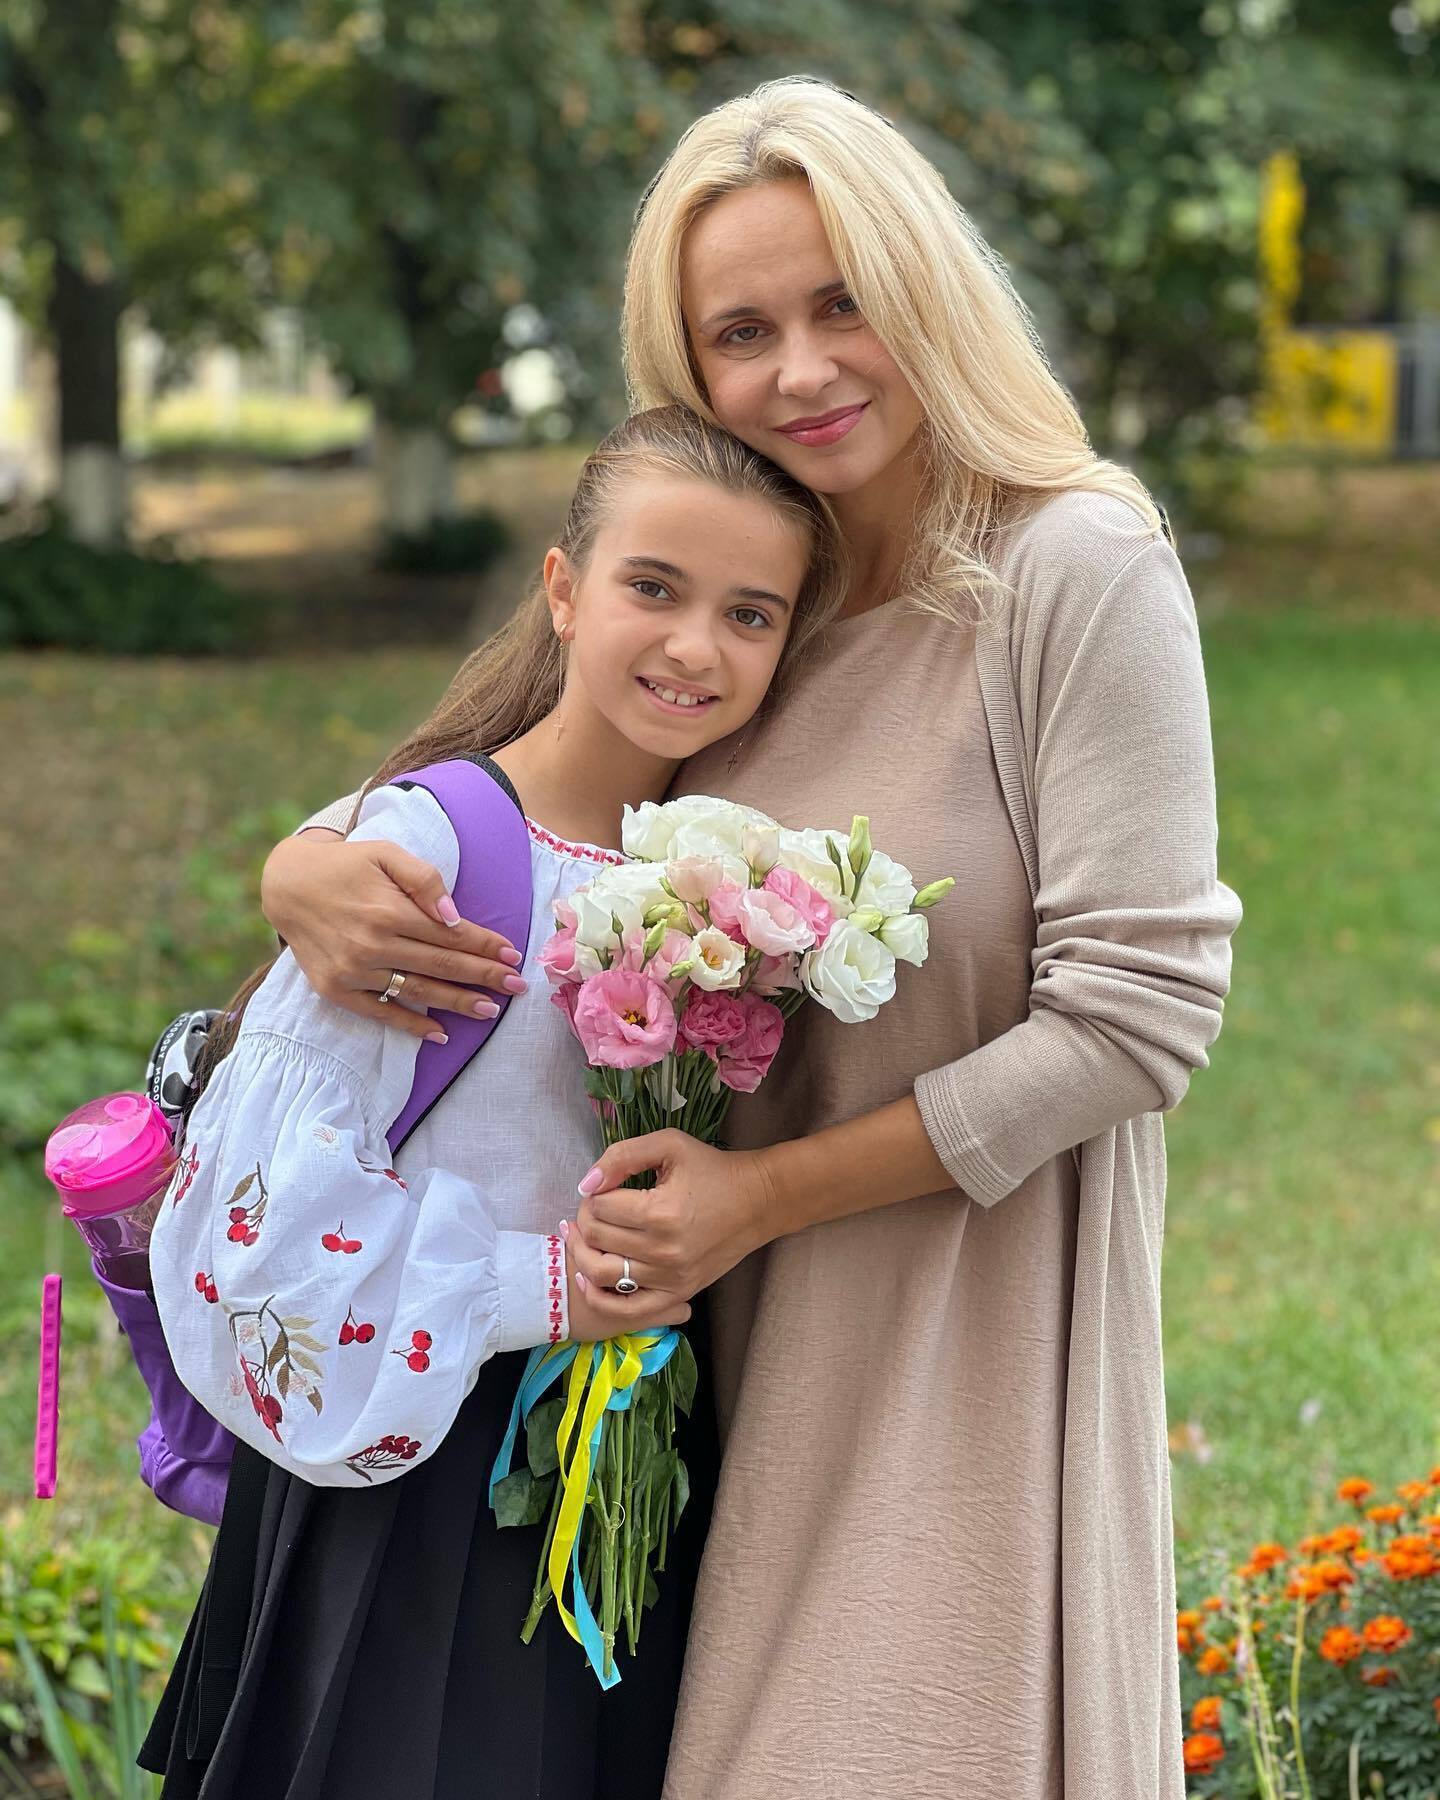 Монатік, Мішина, Дядя Жора та інші українські зірки відвели дітей до школи: милі фото з 1 вересня